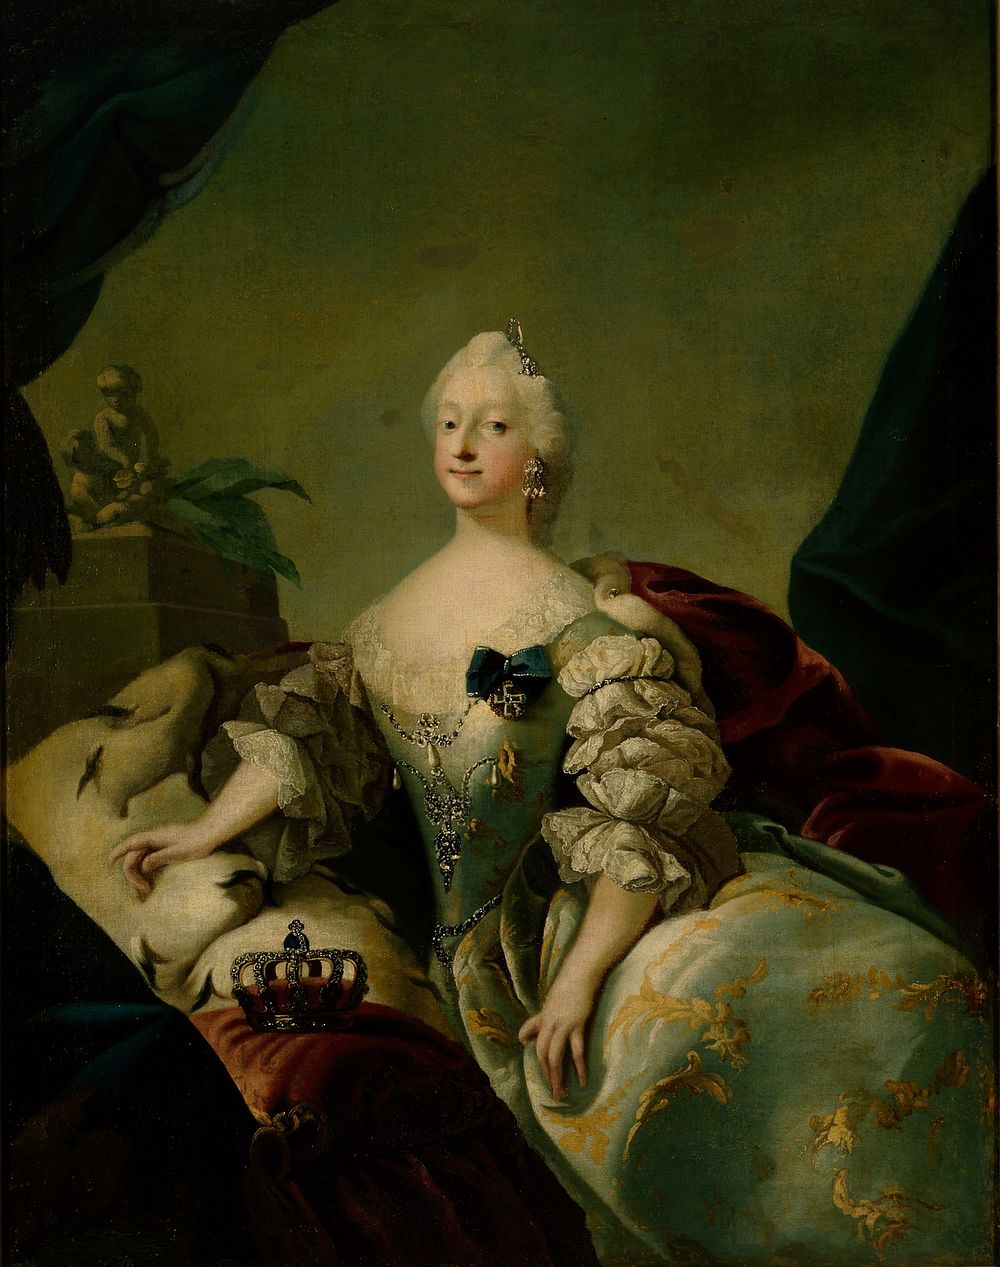 Louise, queen of denmark, 1741 - 1751